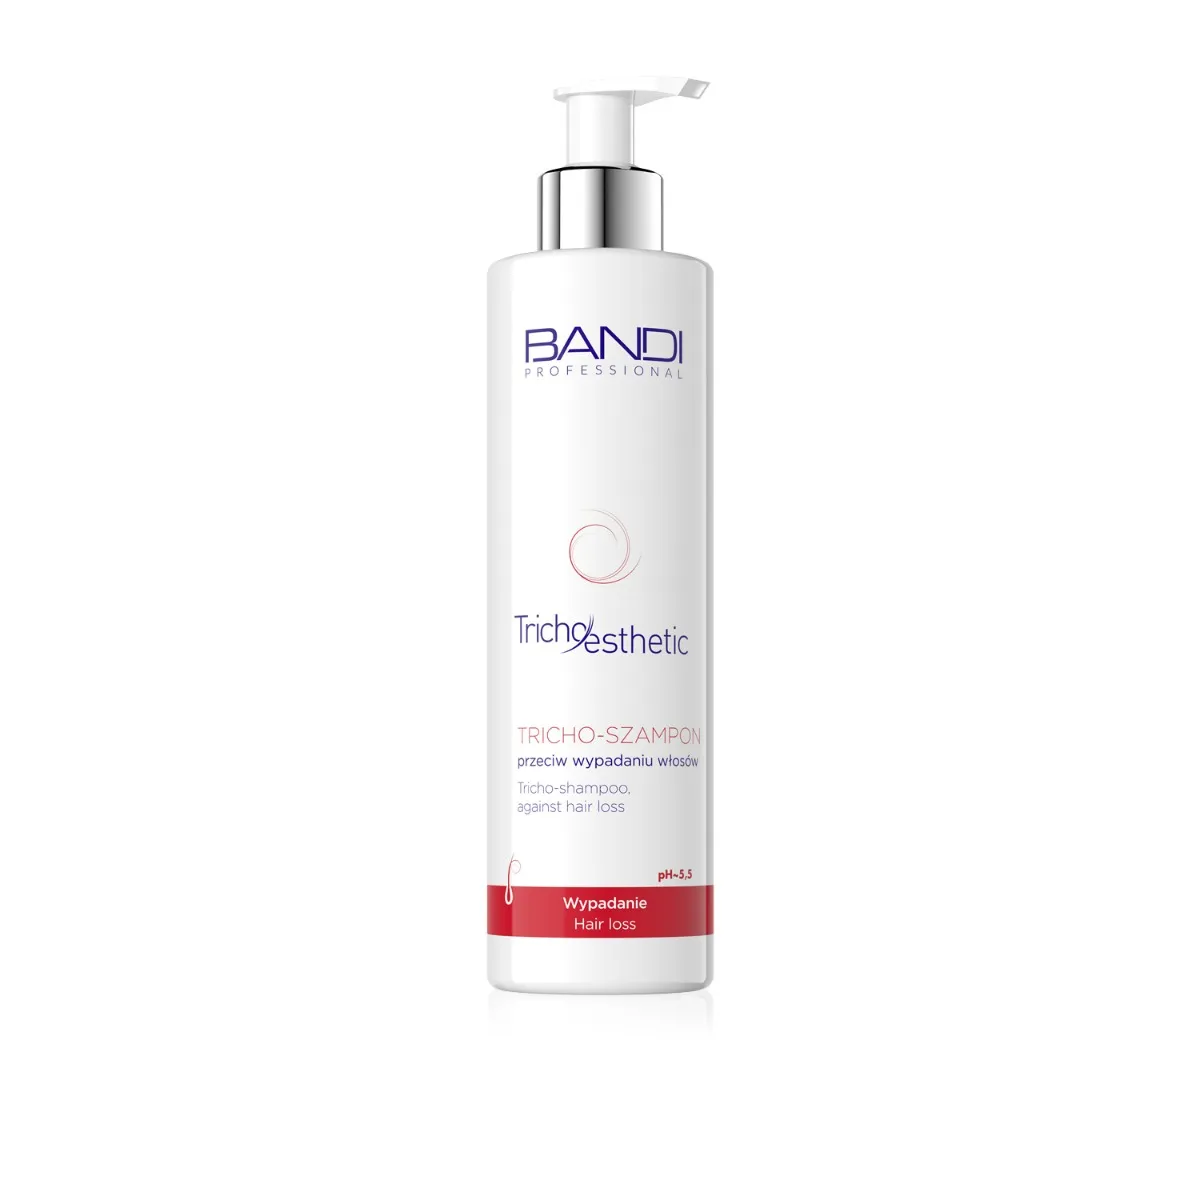 BANDI Tricho Esthetic tricho-szampon przeciw wypadaniu włosów, 230 ml